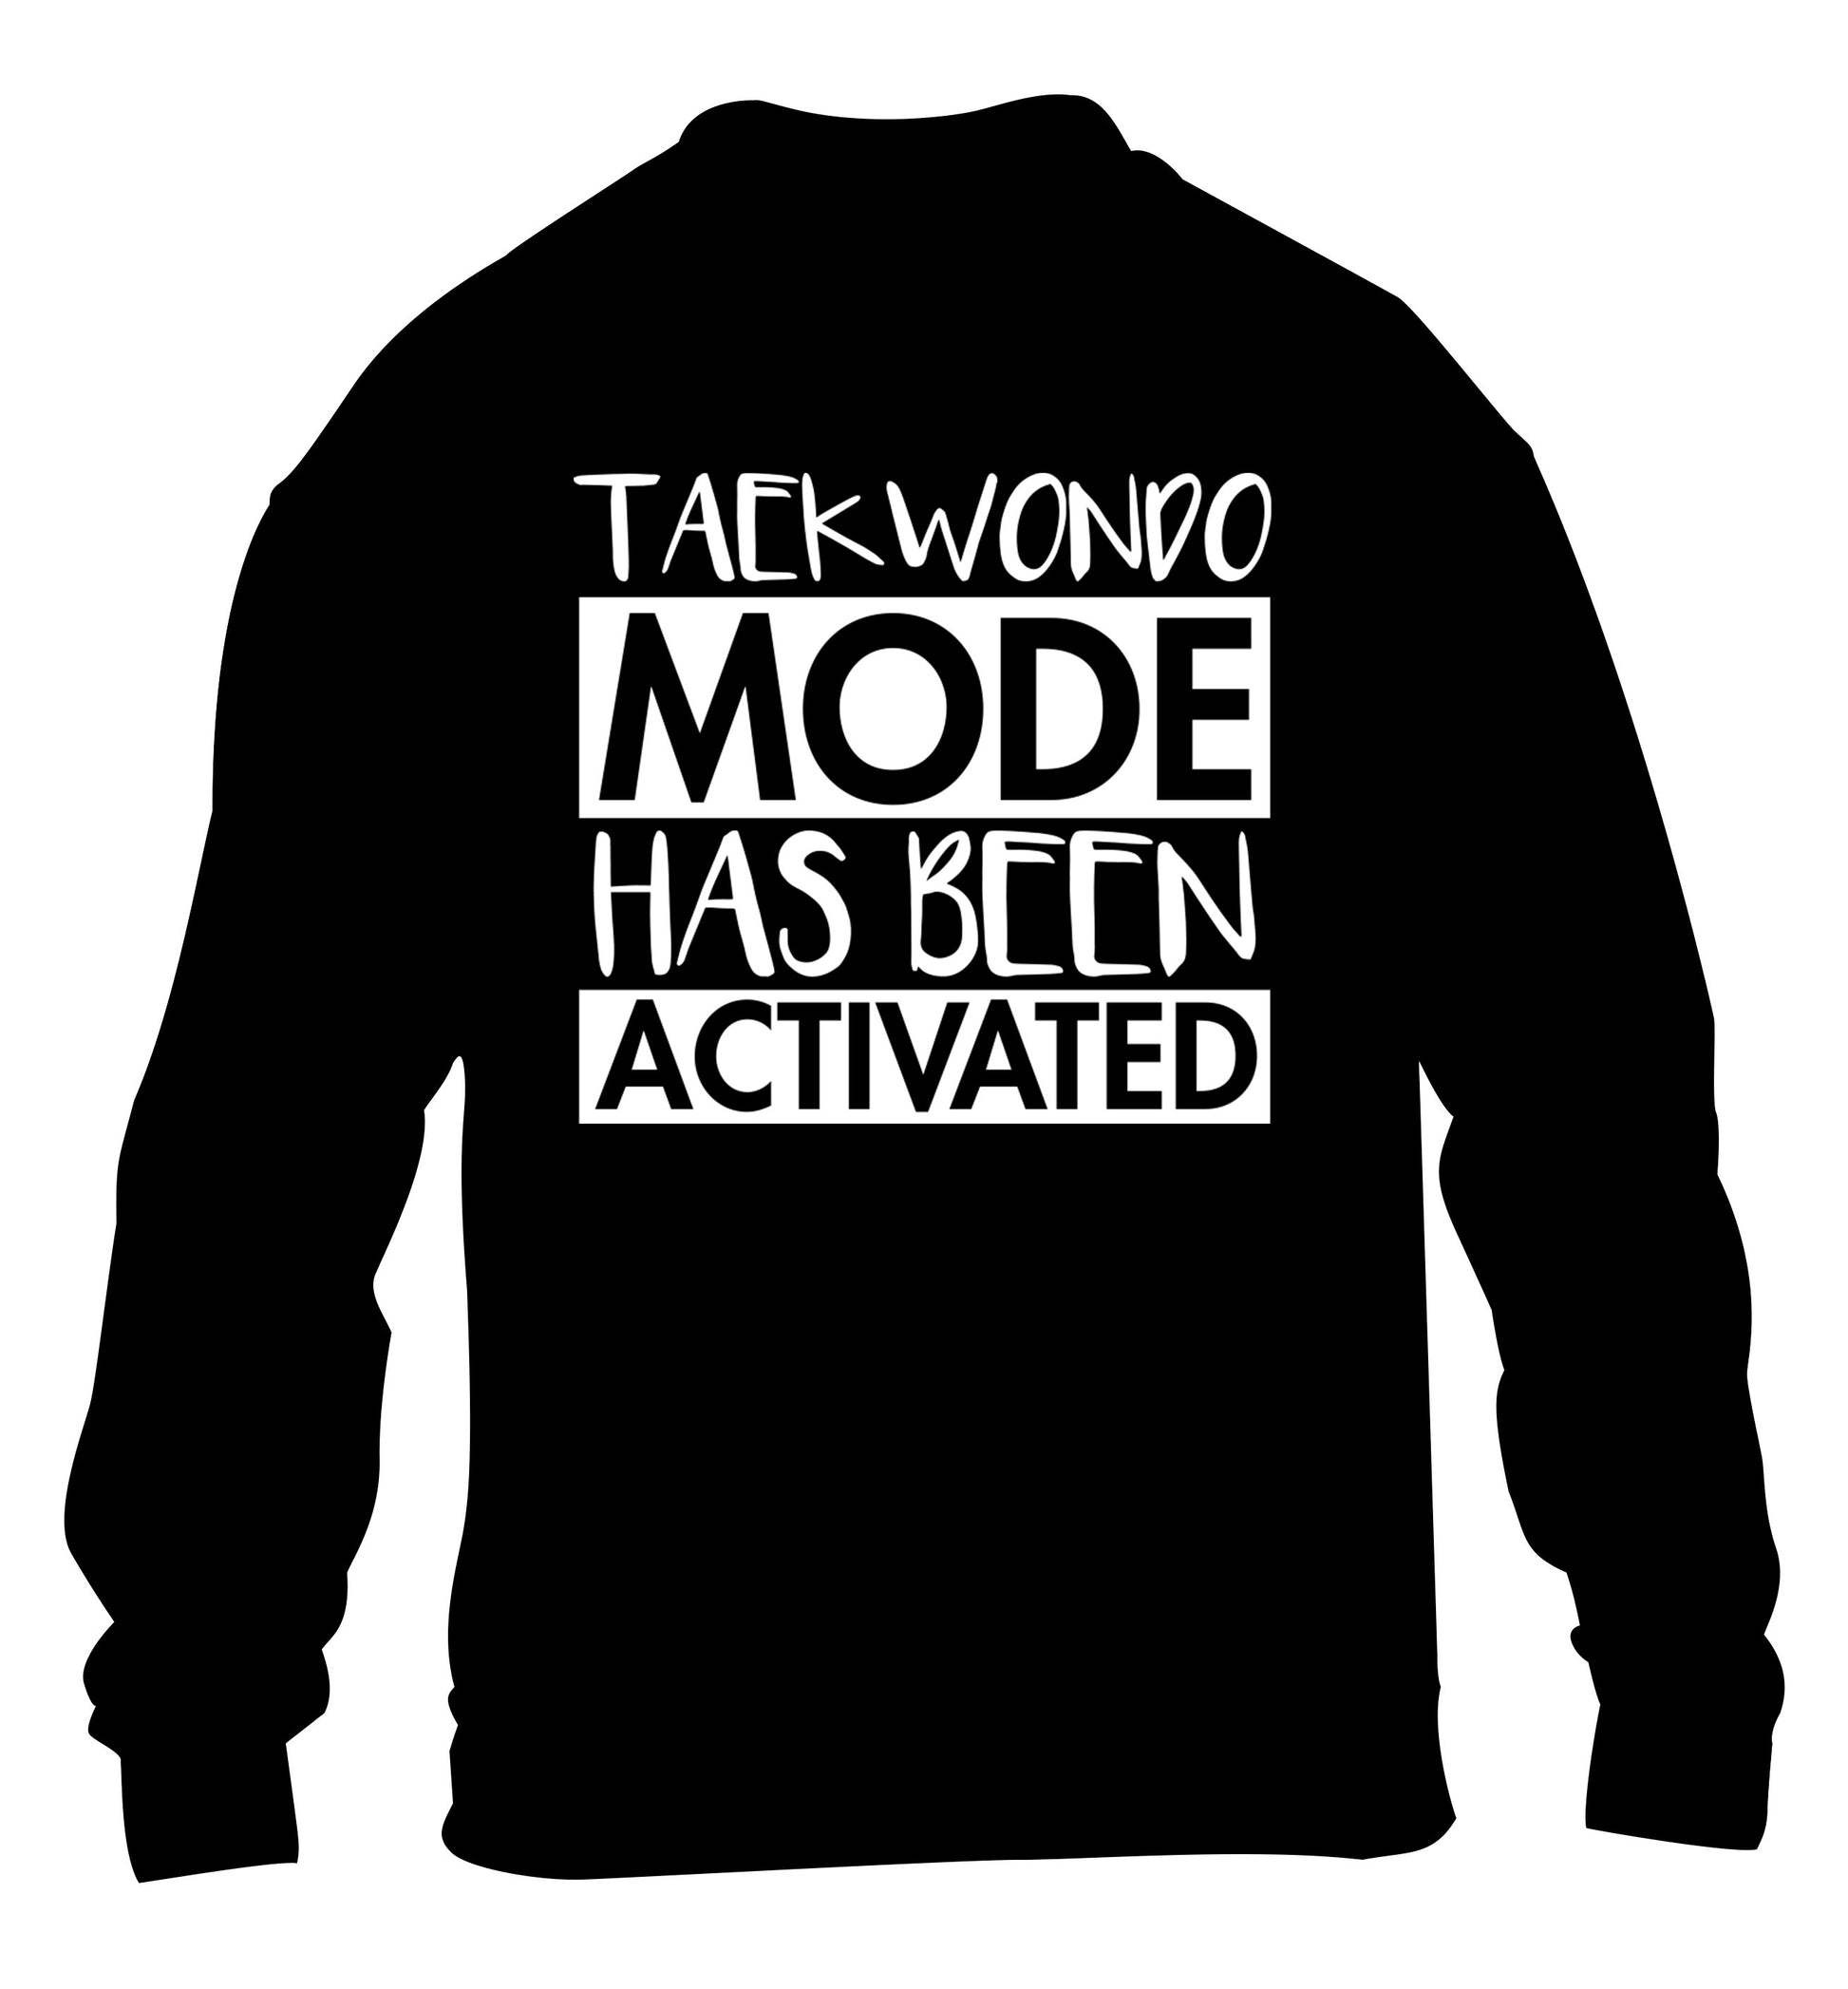 Taekwondo mode activated children's black sweater 12-14 Years